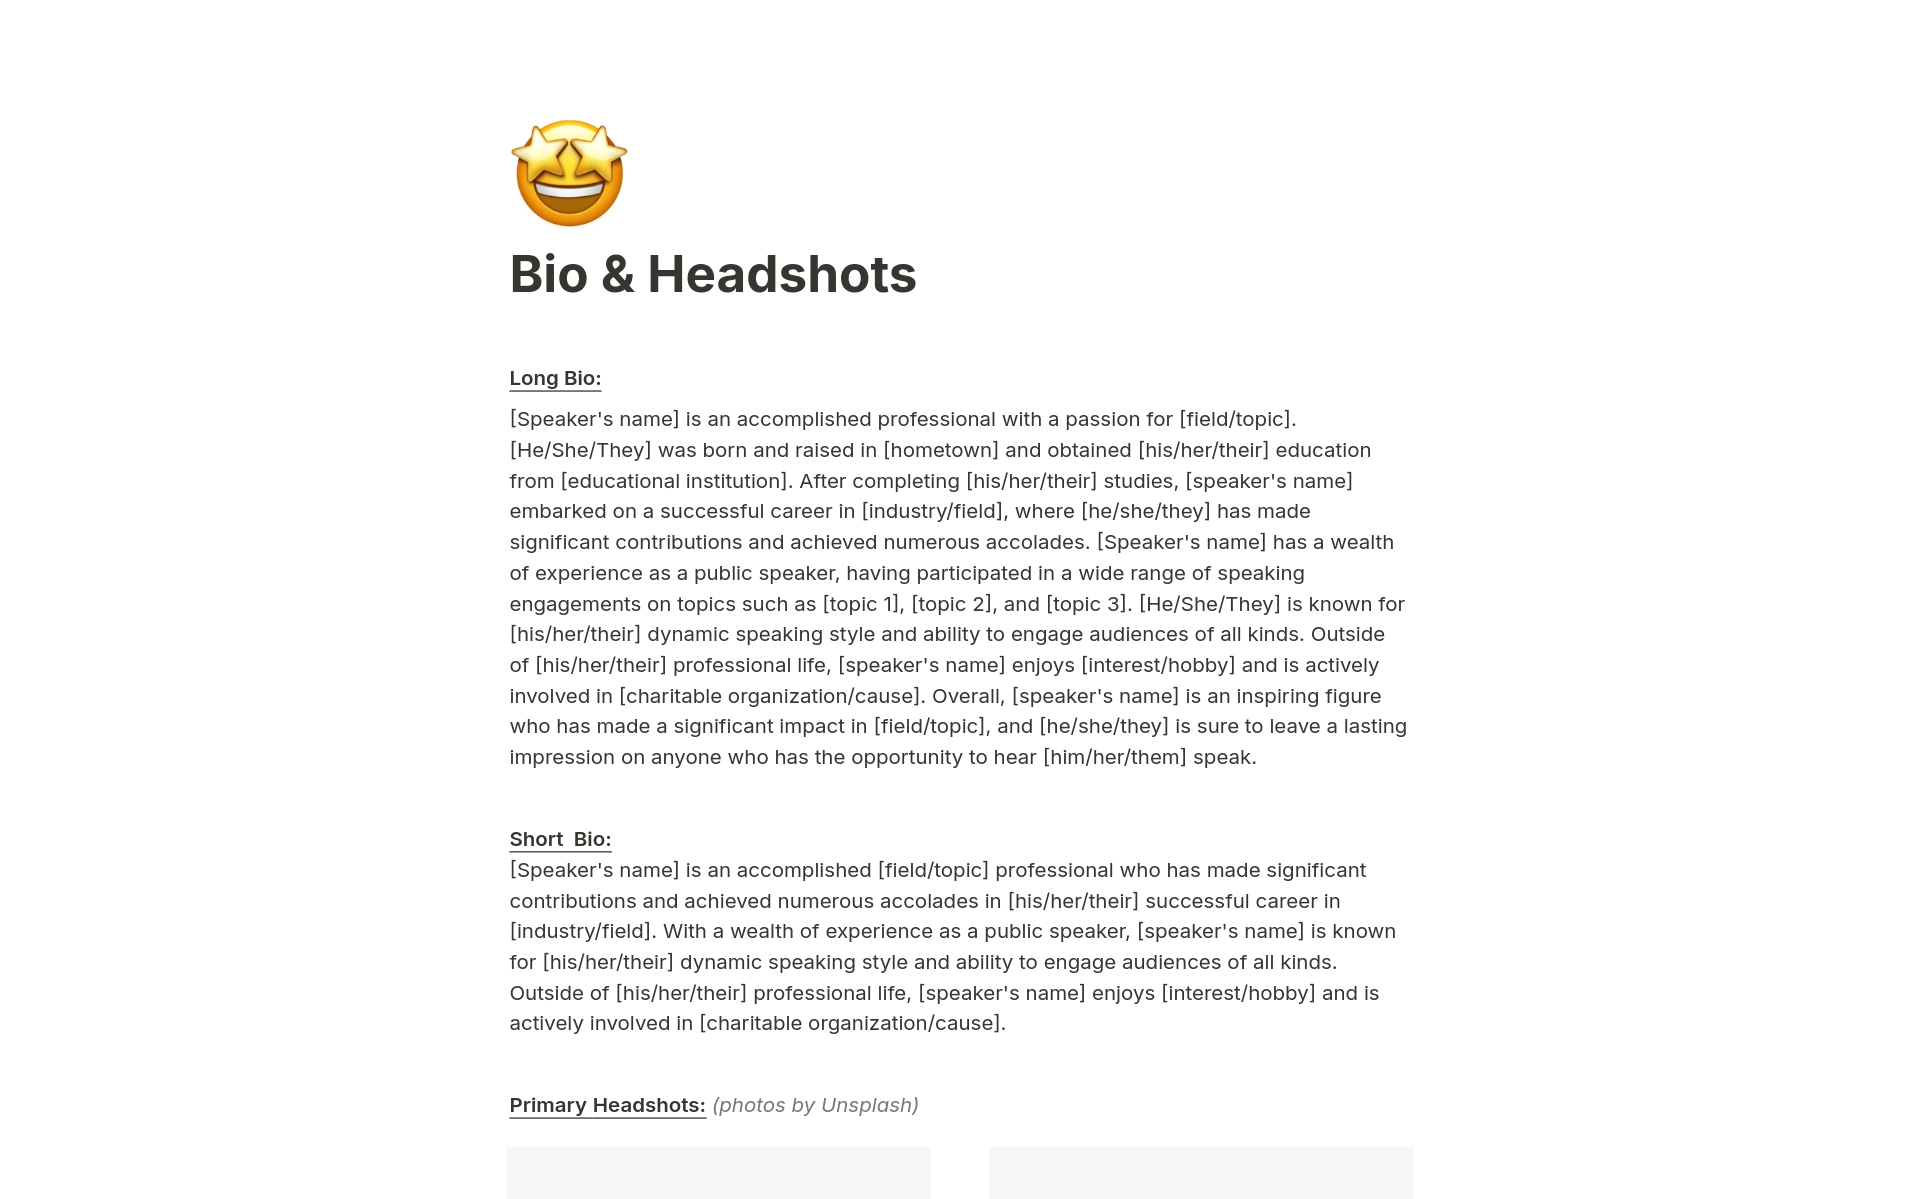 En förhandsgranskning av mallen för Bio & Headshots